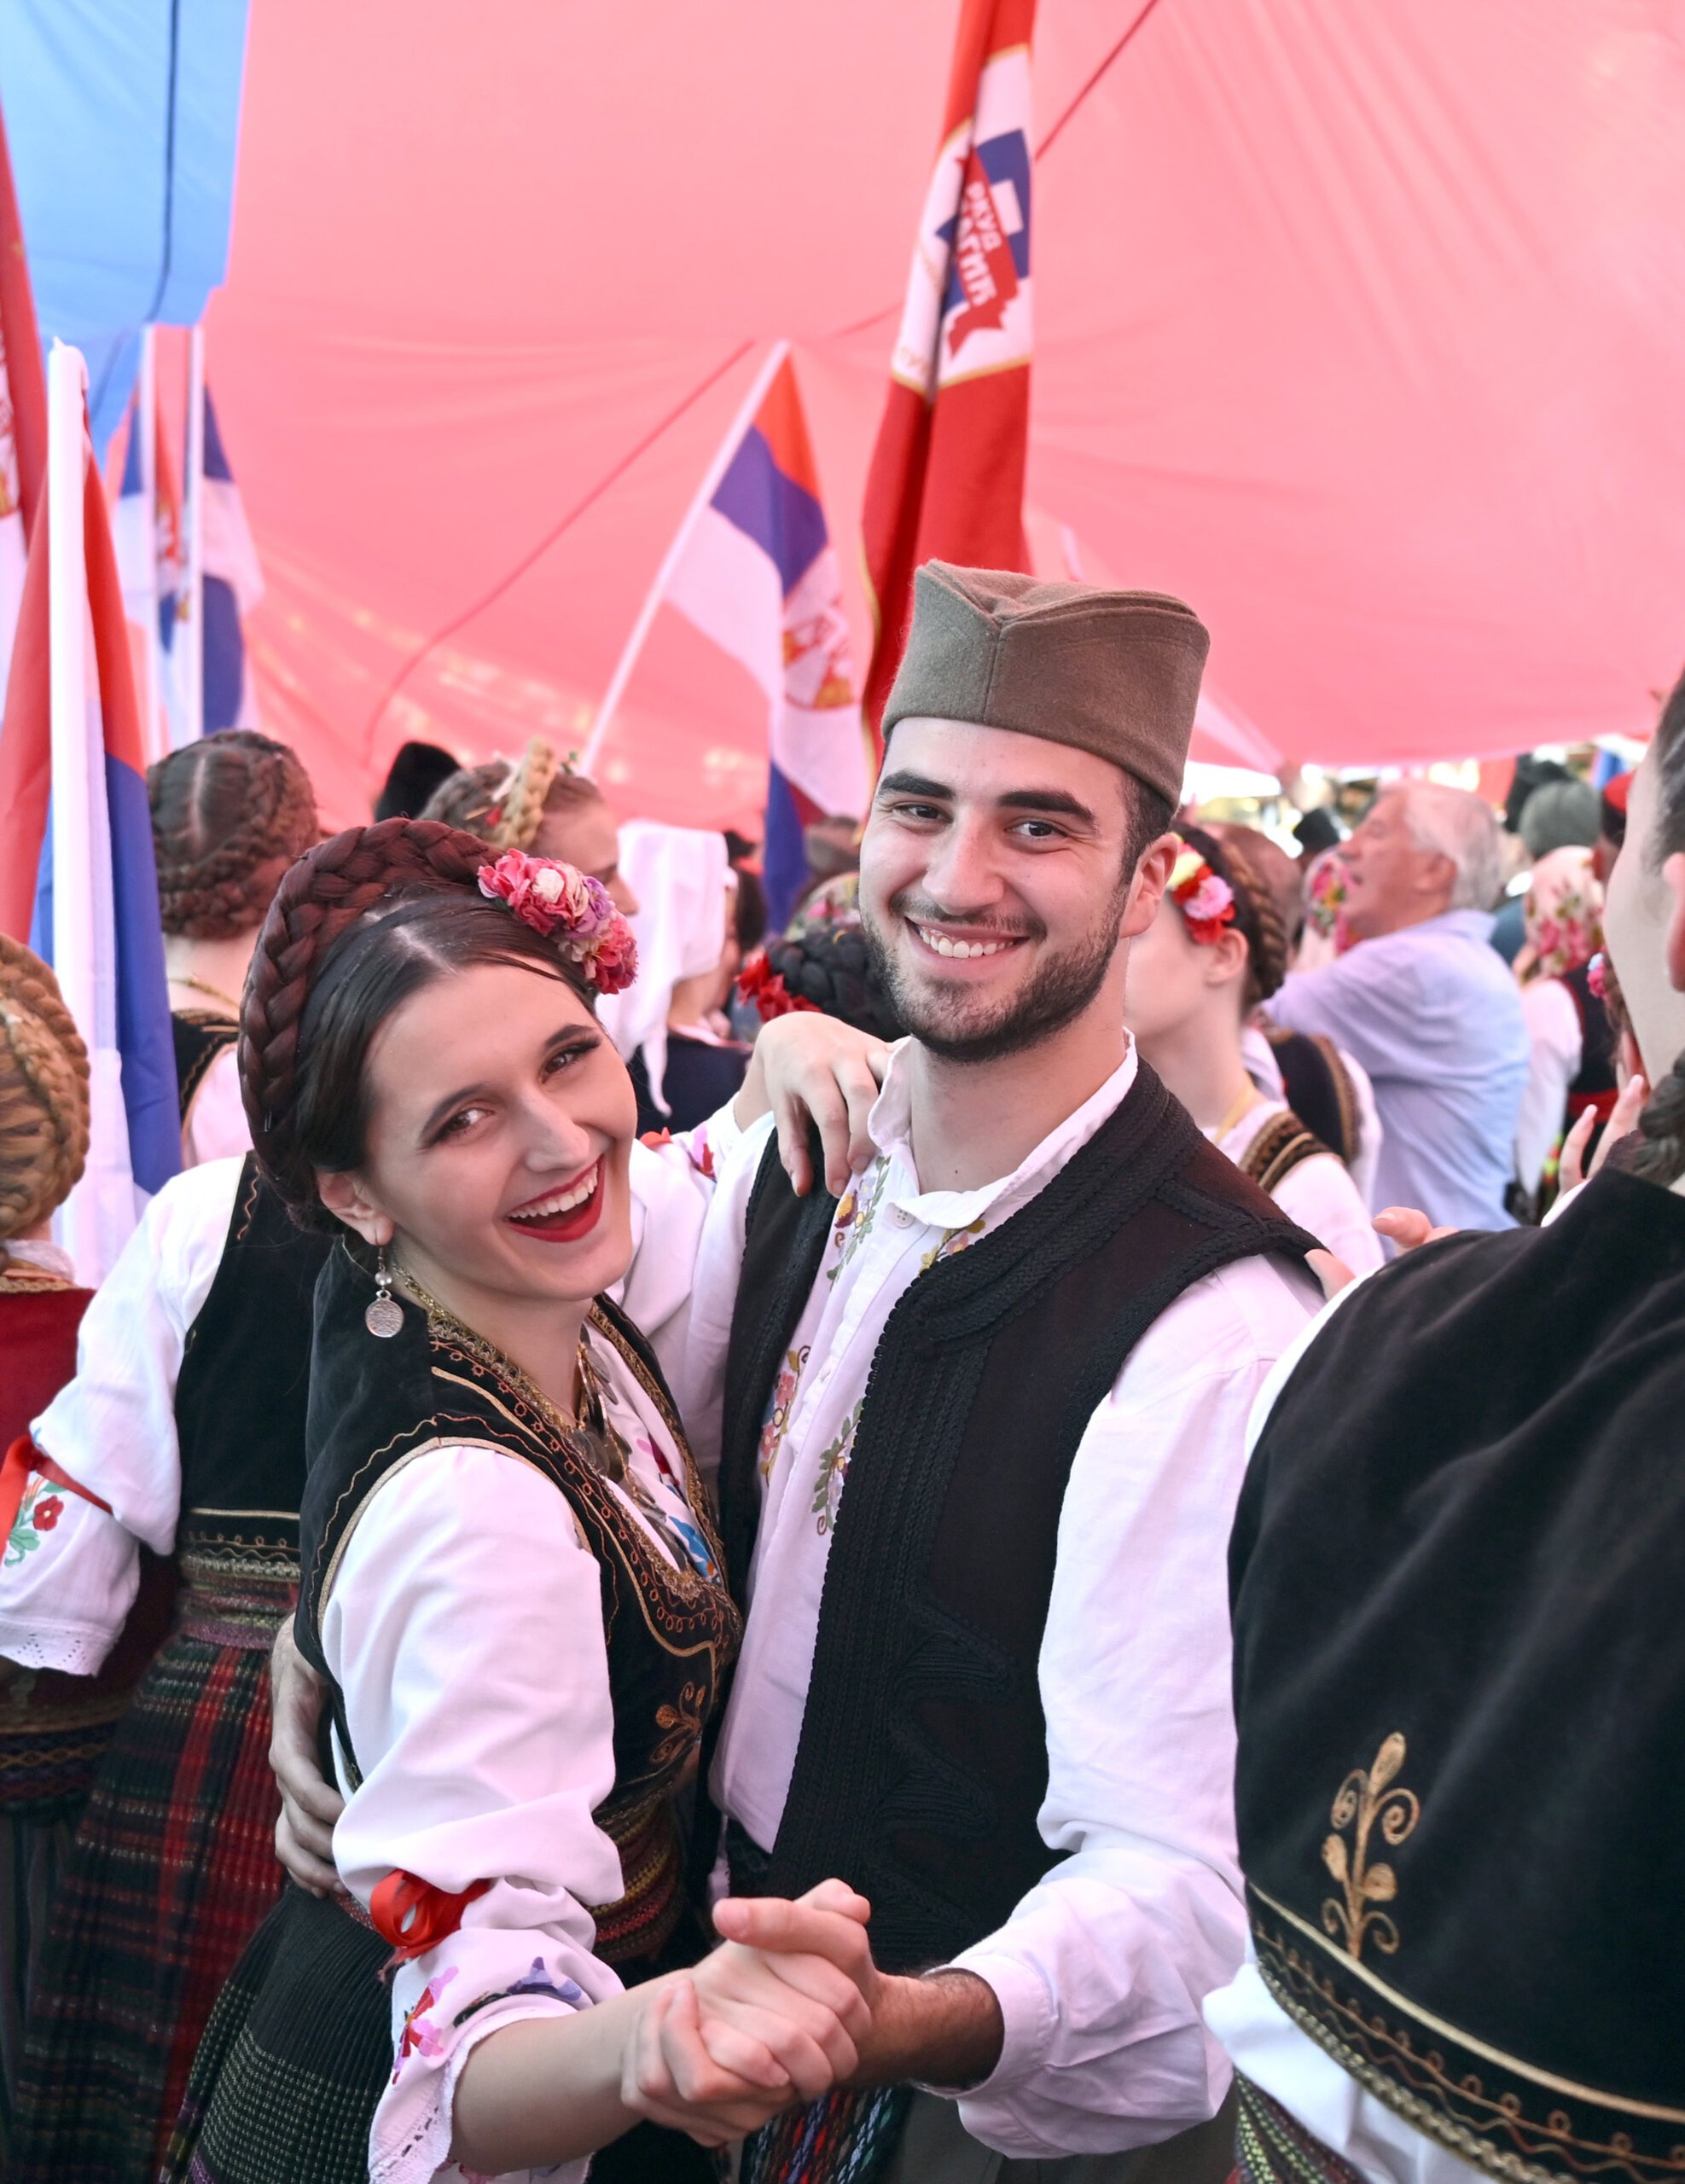 (FOTO) Kako je izgledala manifestacija "Jedan narod, jedan sabor - Srbija i Srpska" na Trgu republike u fotografijama? 4